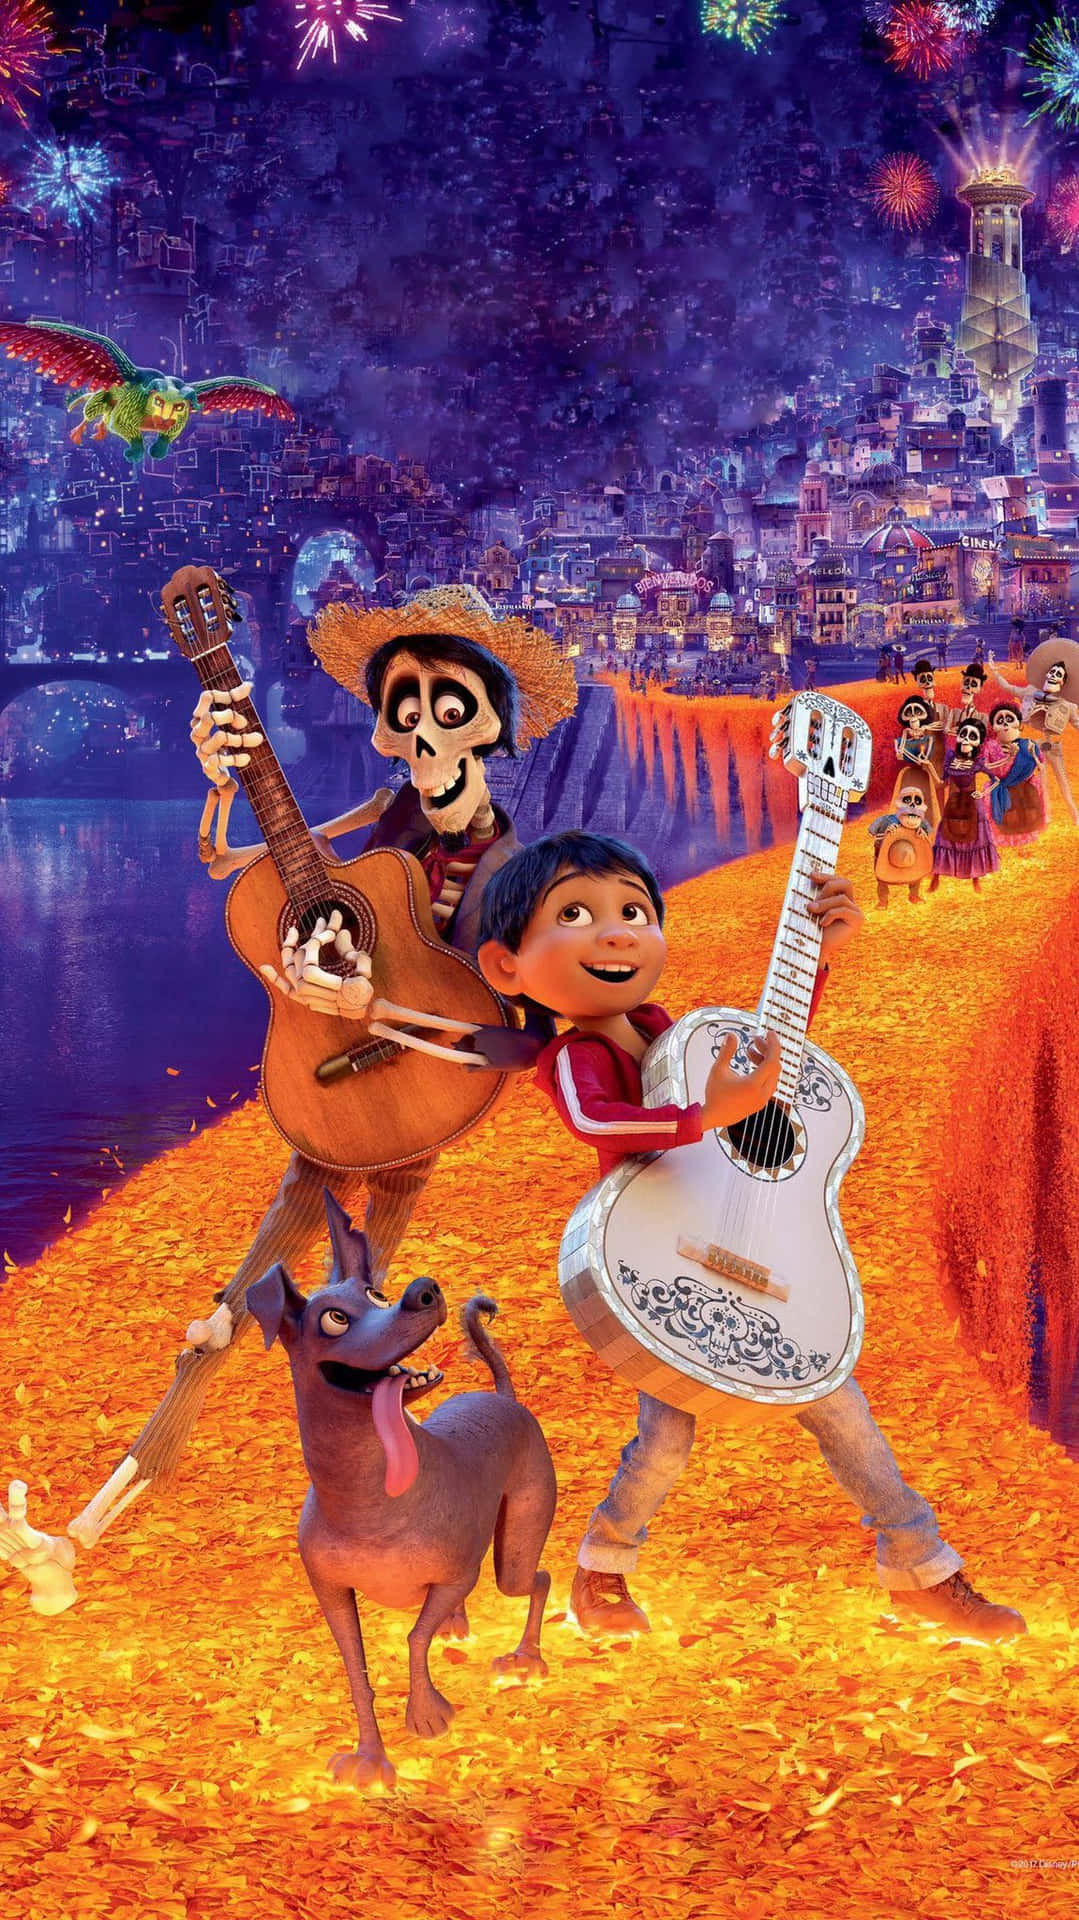 Följmed Miguel På En Magisk Resa I De Dödas Land Med Disney's Coco! Wallpaper